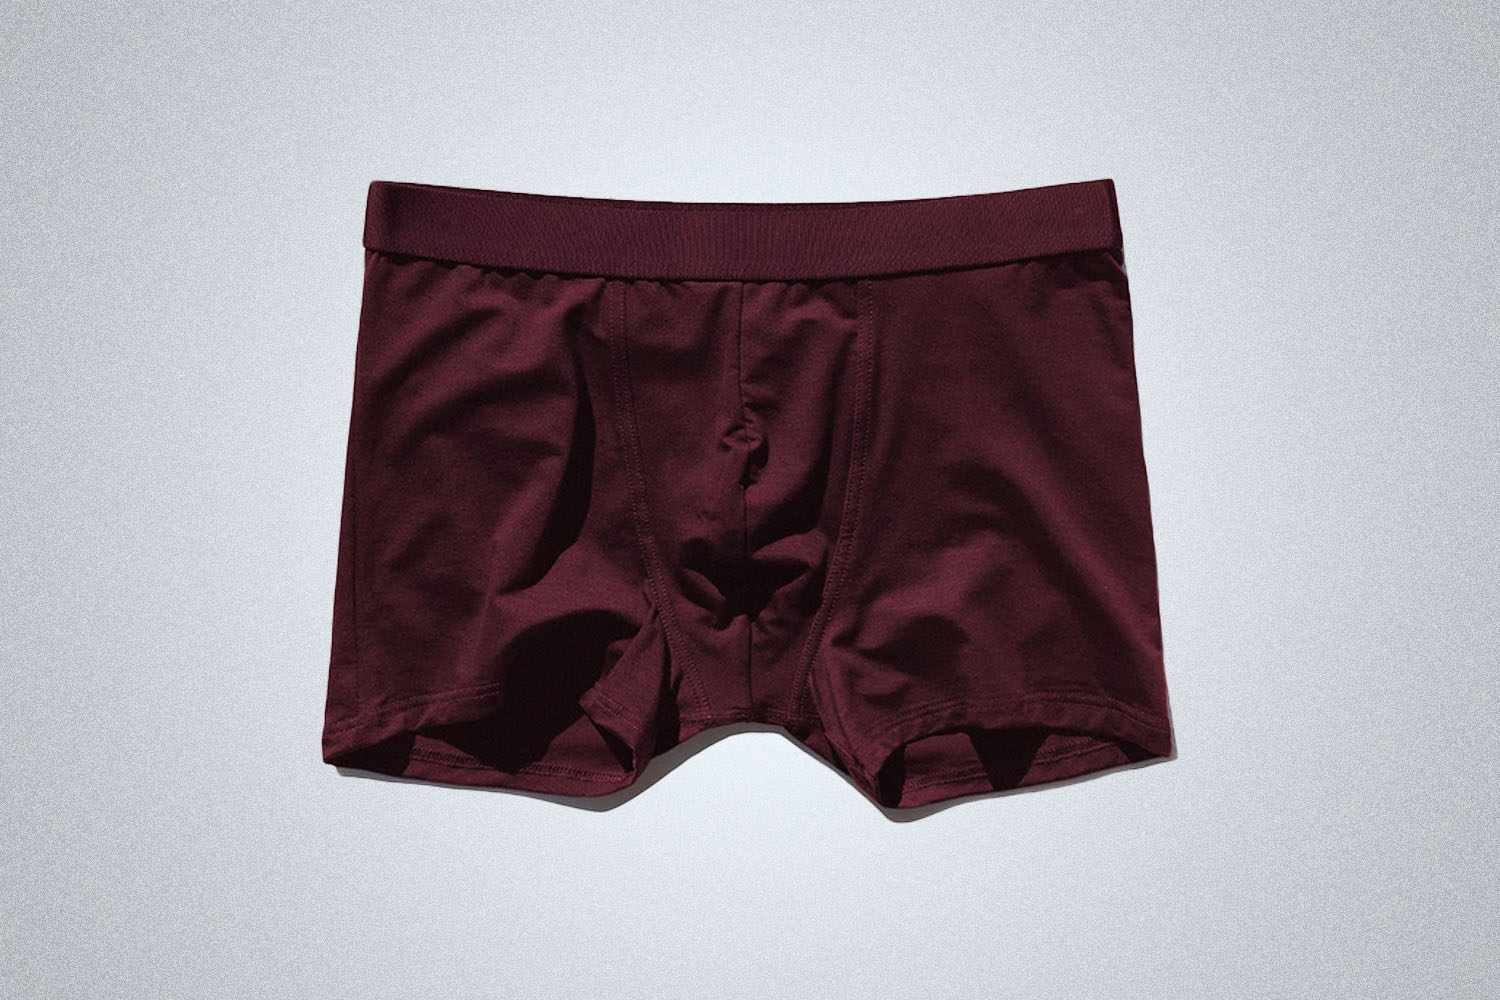 Used] Uniqlo men's underwear - Trunk (M size), Men's Fashion